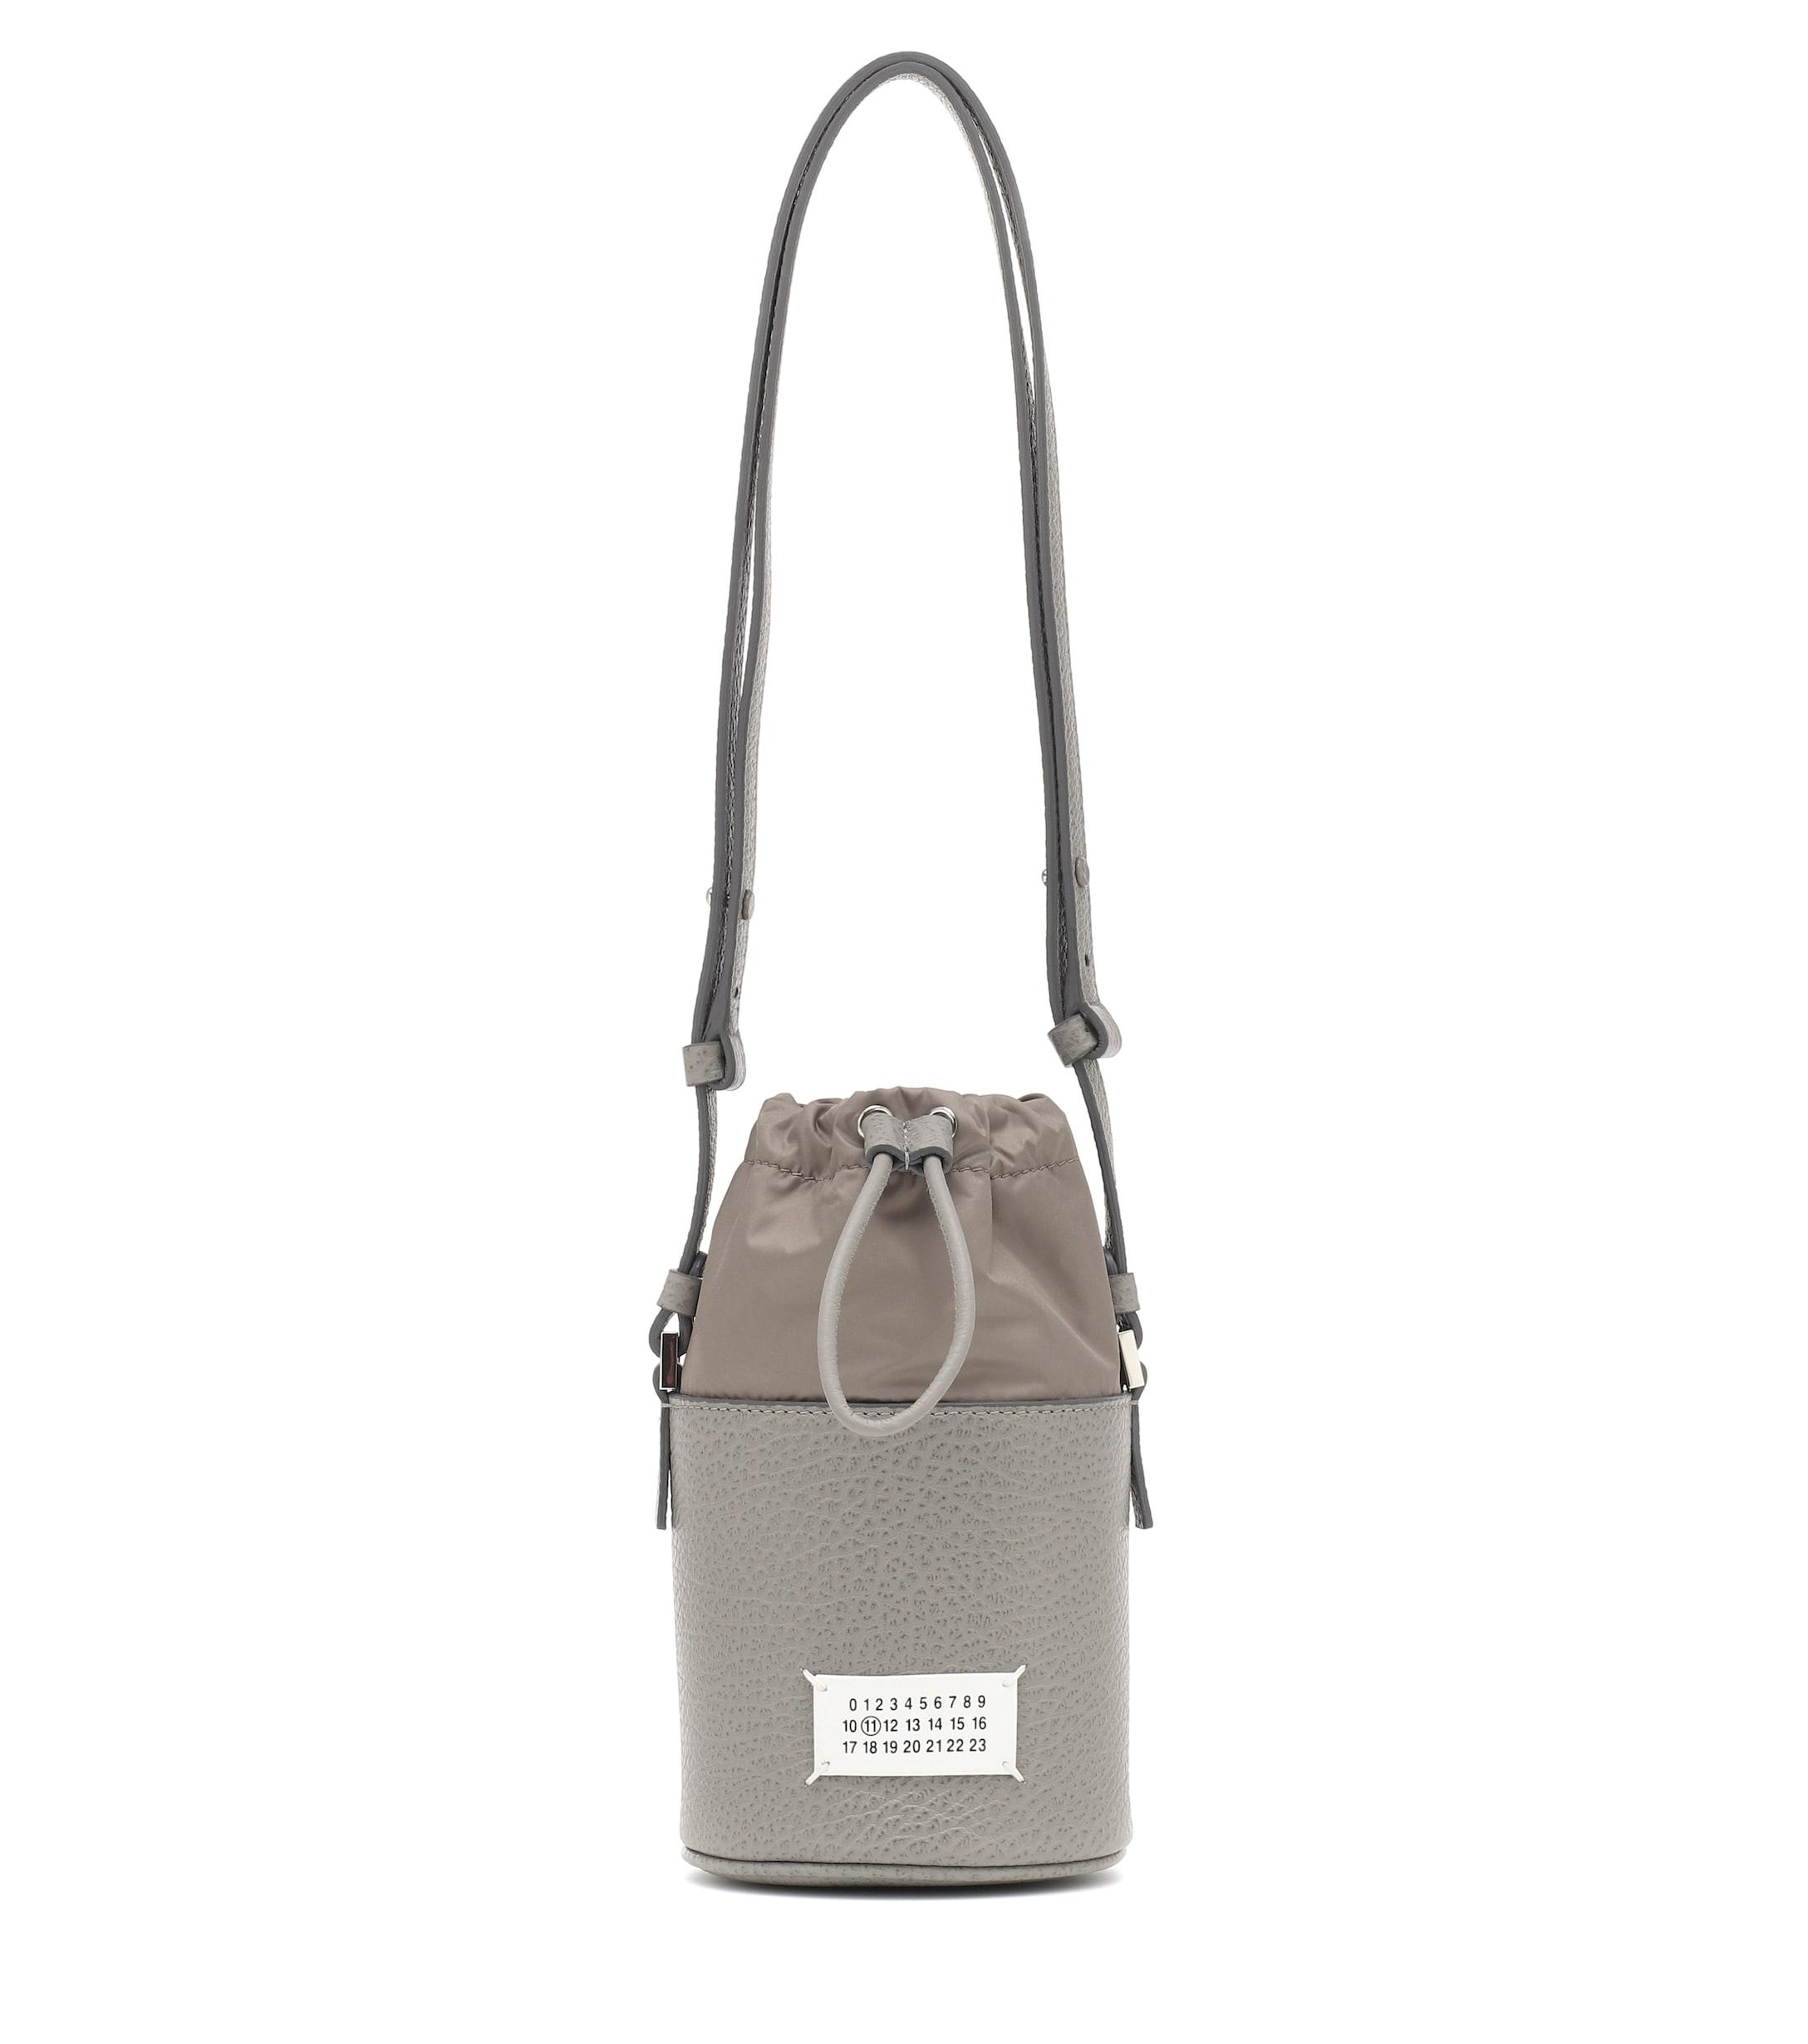 Maison Margiela 5ac Mini Leather Bucket Bag in Grey (Gray) - Lyst